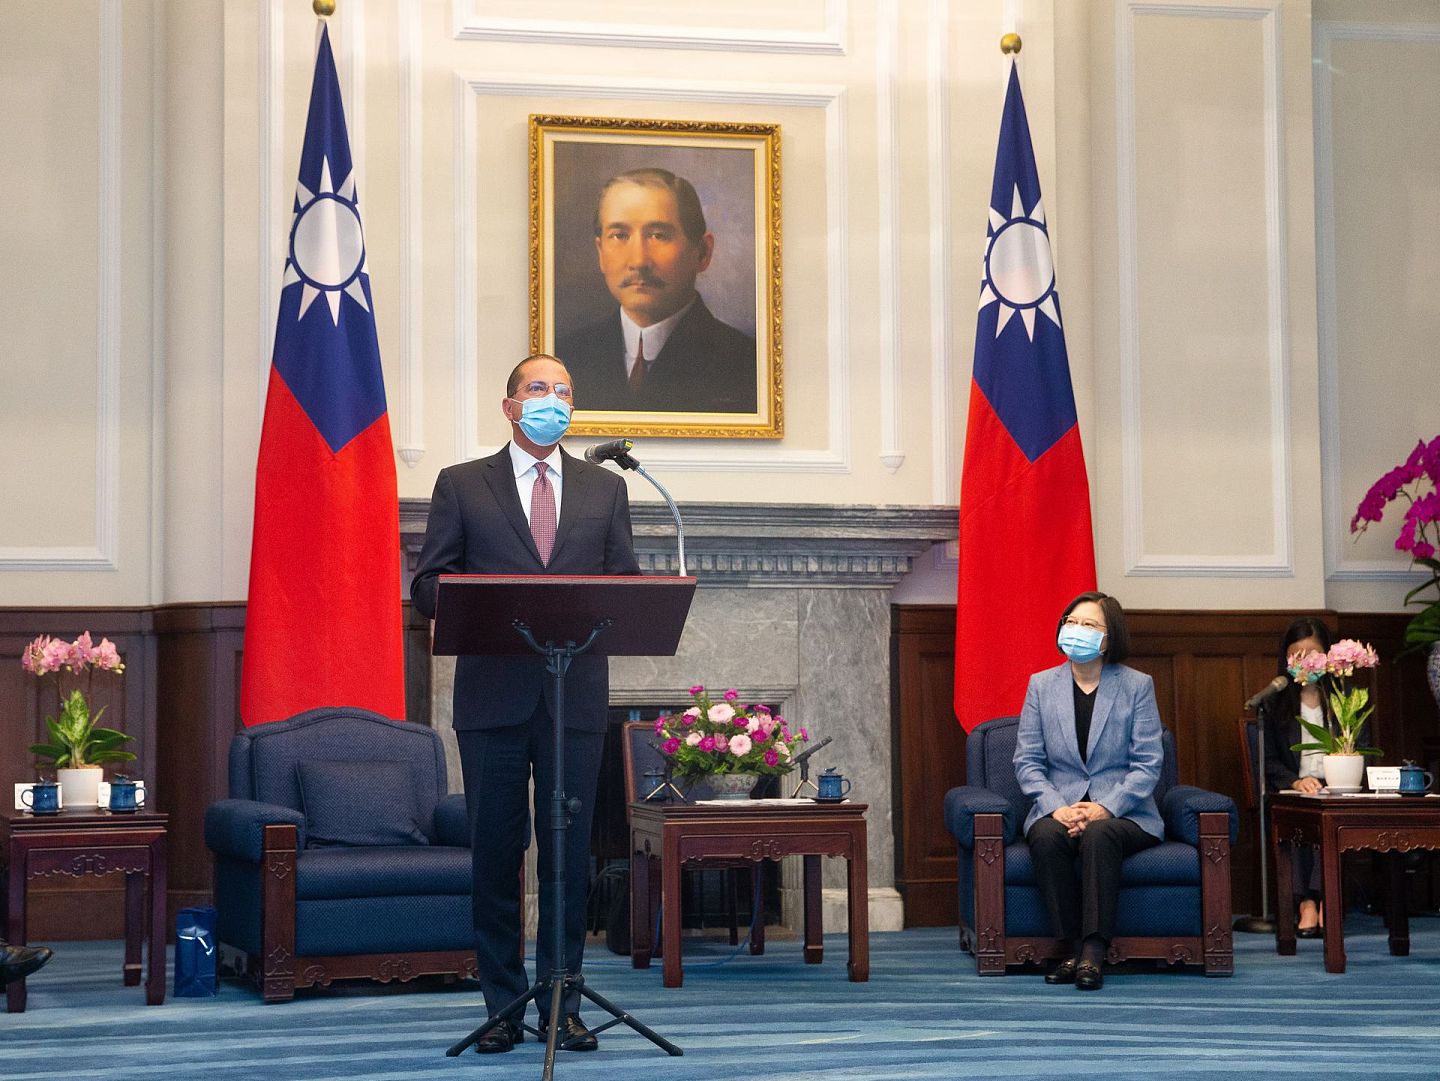 阿扎成为1979年以来访问台湾最高级别的美国政府官员。 图为阿扎与蔡英文8月10日会面并出席记者会。 （中央社）